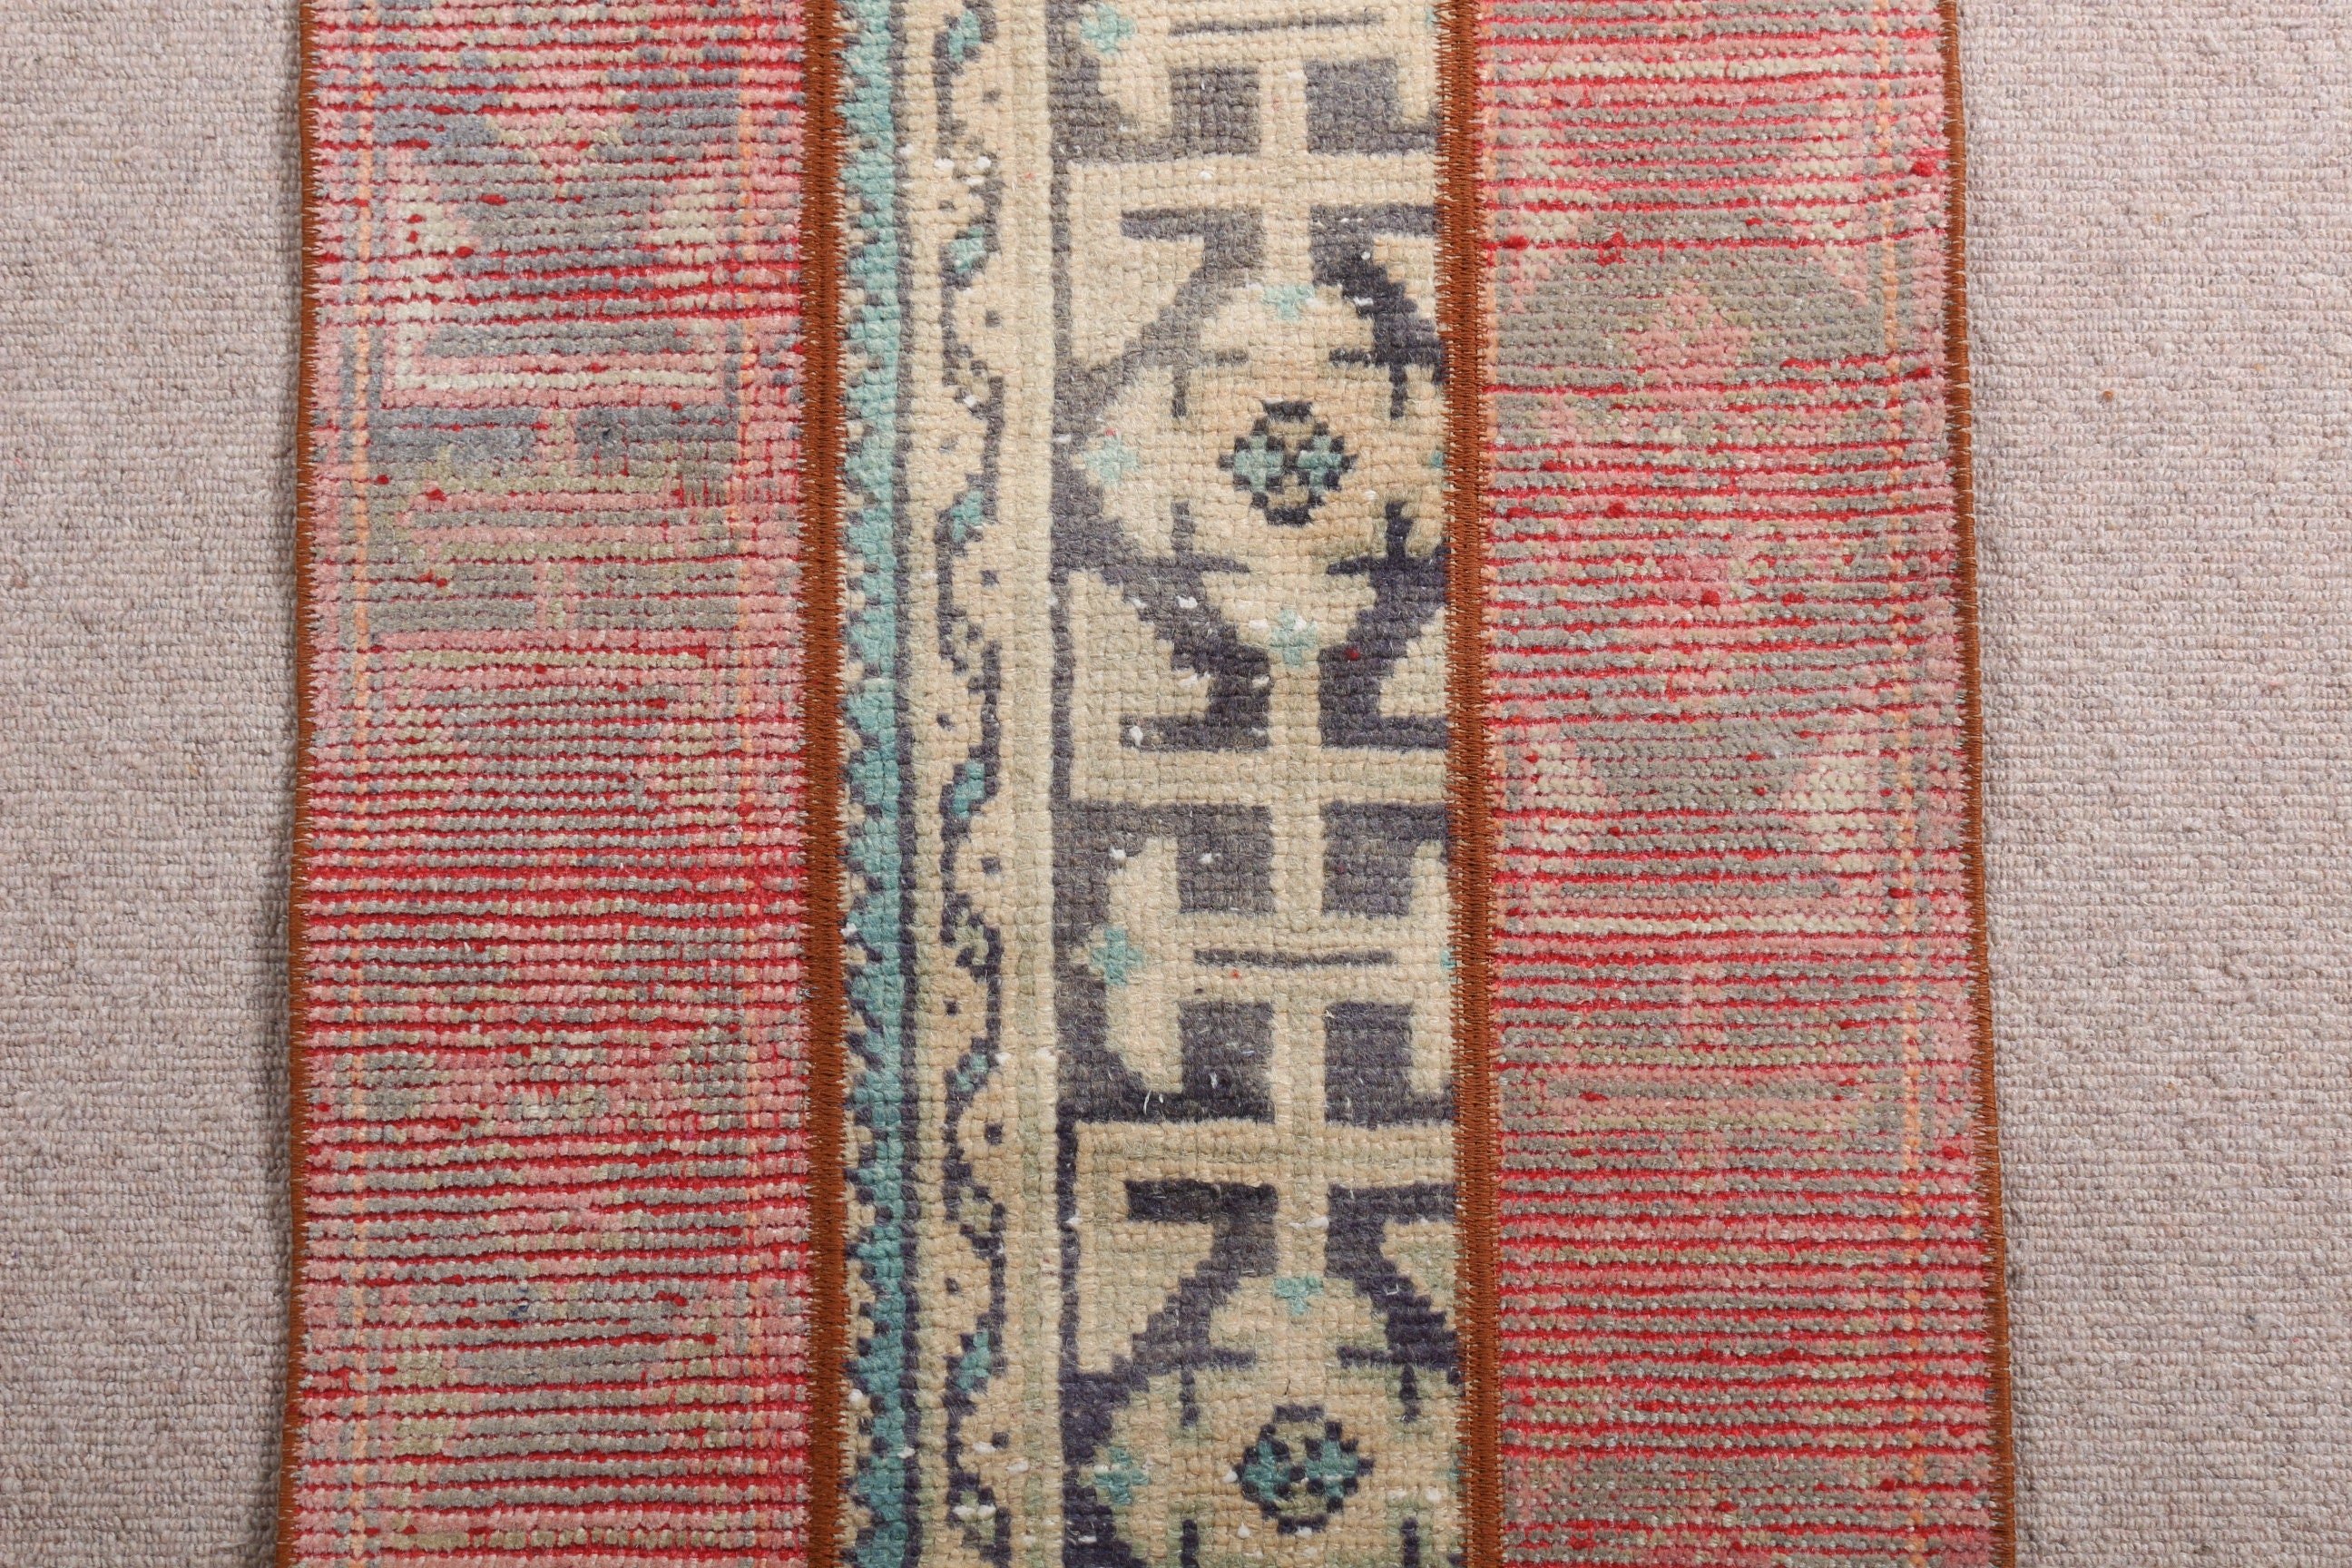 Vintage Rug, Turkish Rugs, 1.8x3.9 ft Small Rug, Rugs for Bedroom, Oriental Rug, Nursery Rug, Wool Rug, Red Oushak Rug, Art Rug, Entry Rug